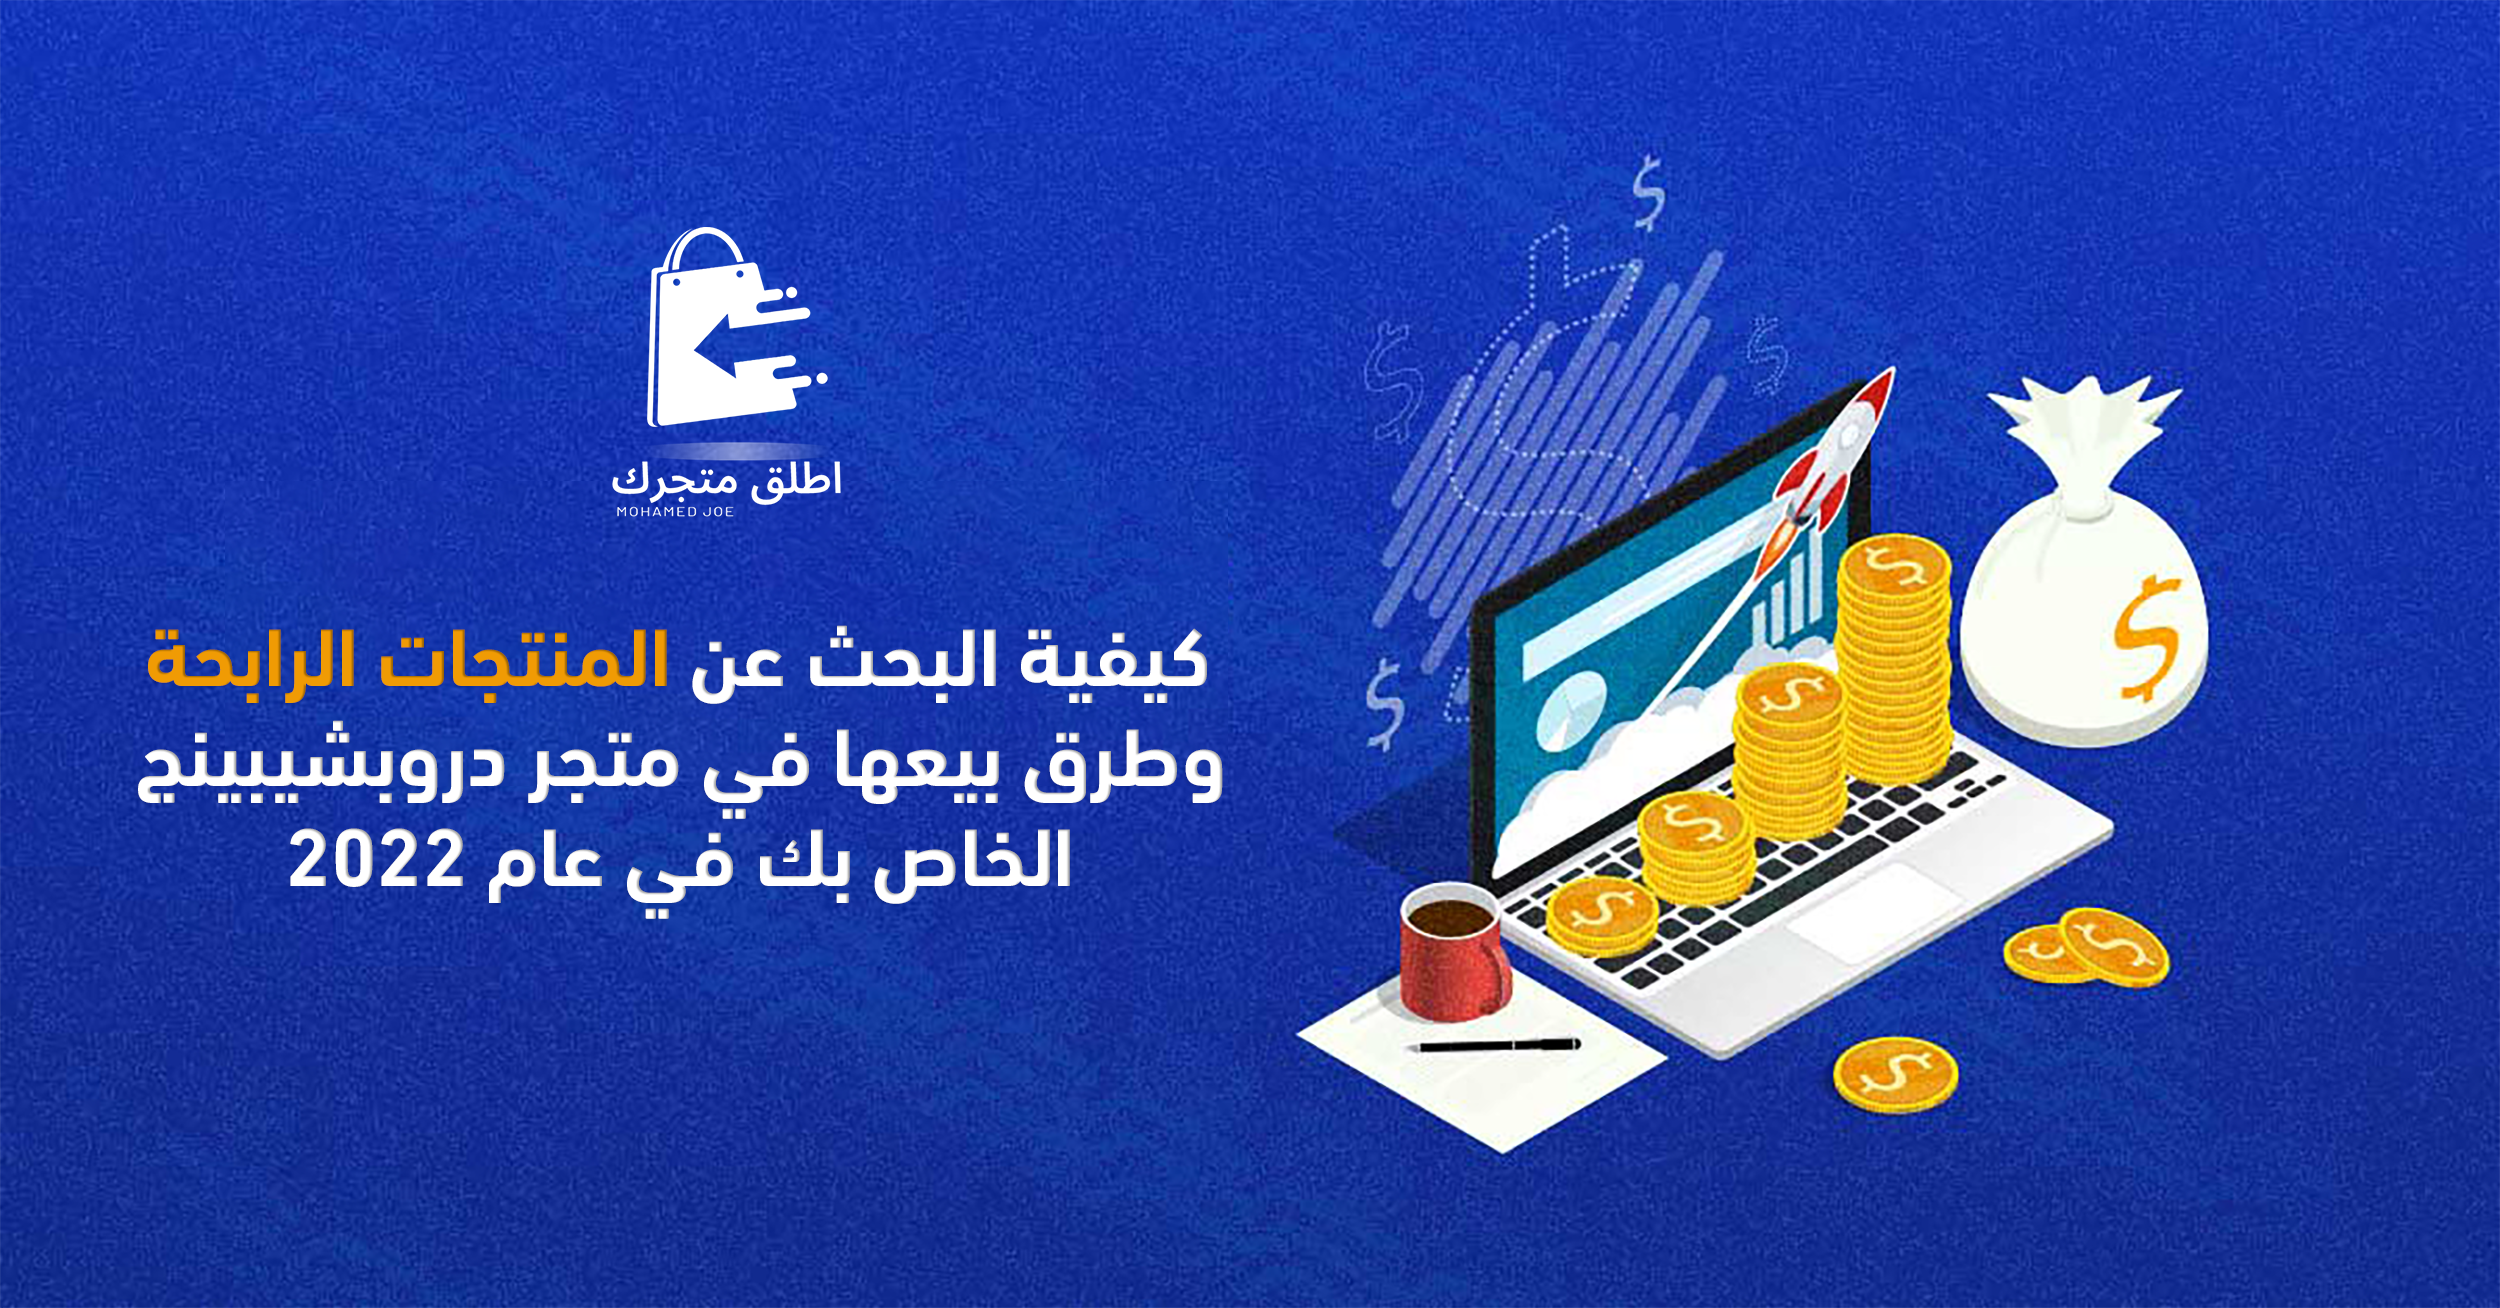 كيفية البحث عن المنتجات الرابحة وطرق بيعها في متجر دروبشيبينج الخاص بك في عام 2022 محمد جو (Mohamed joe) التجارة الإلكترونية